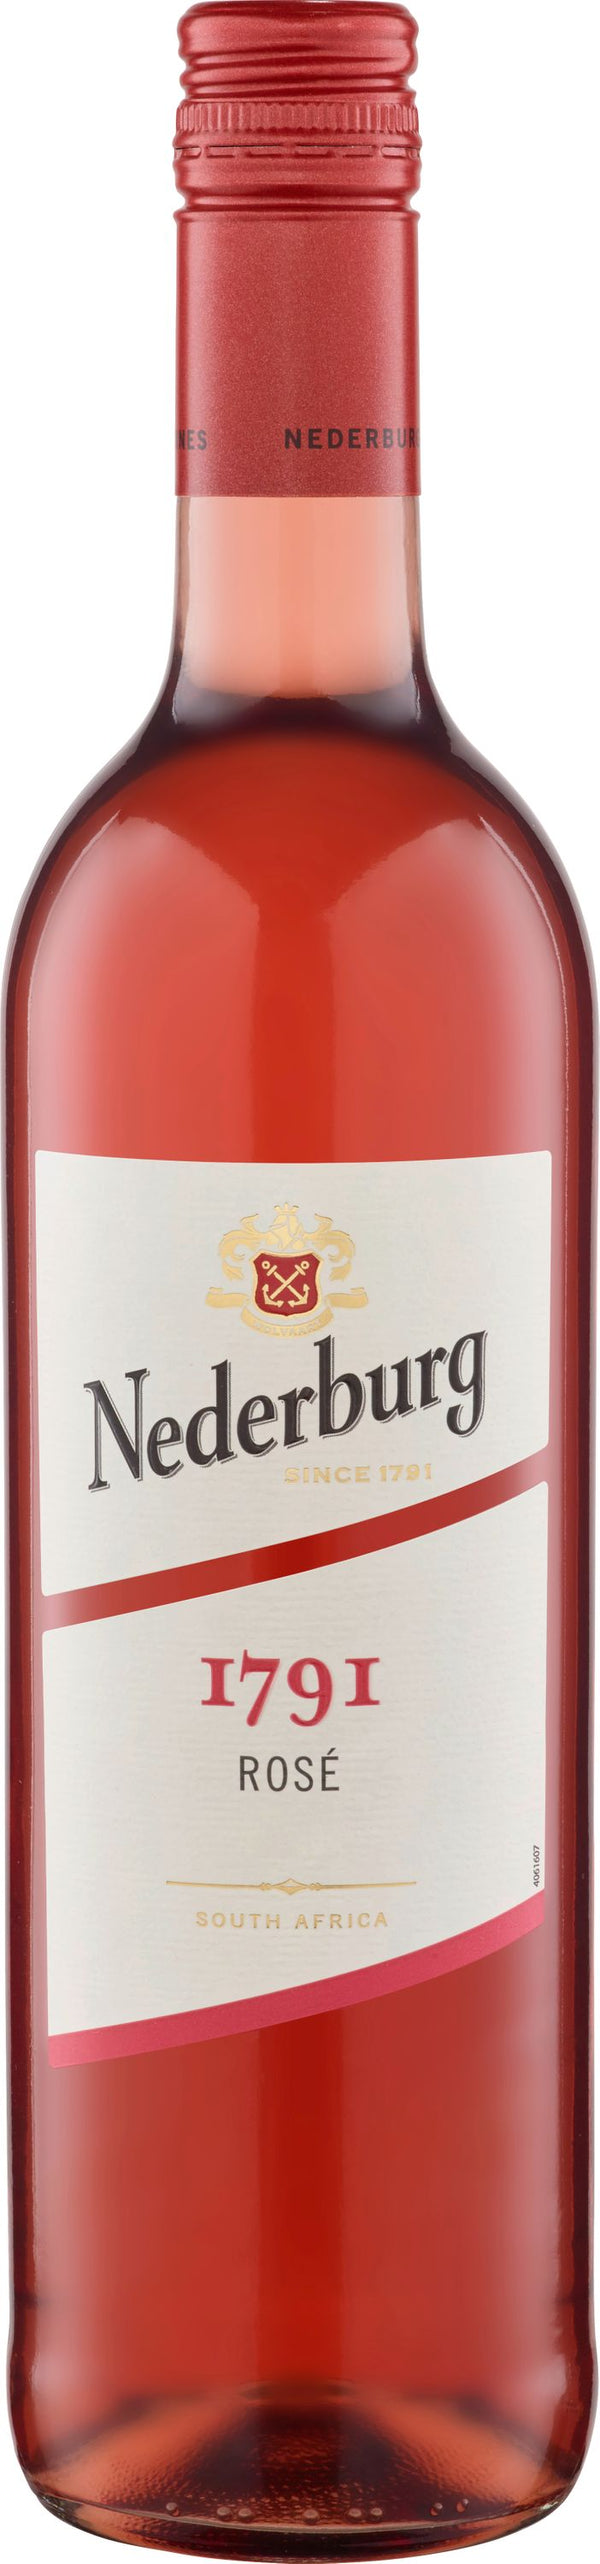 Nederburg Foundation Rose Wein halbtrocken frisch und fruchtig 750ml 13% Vol